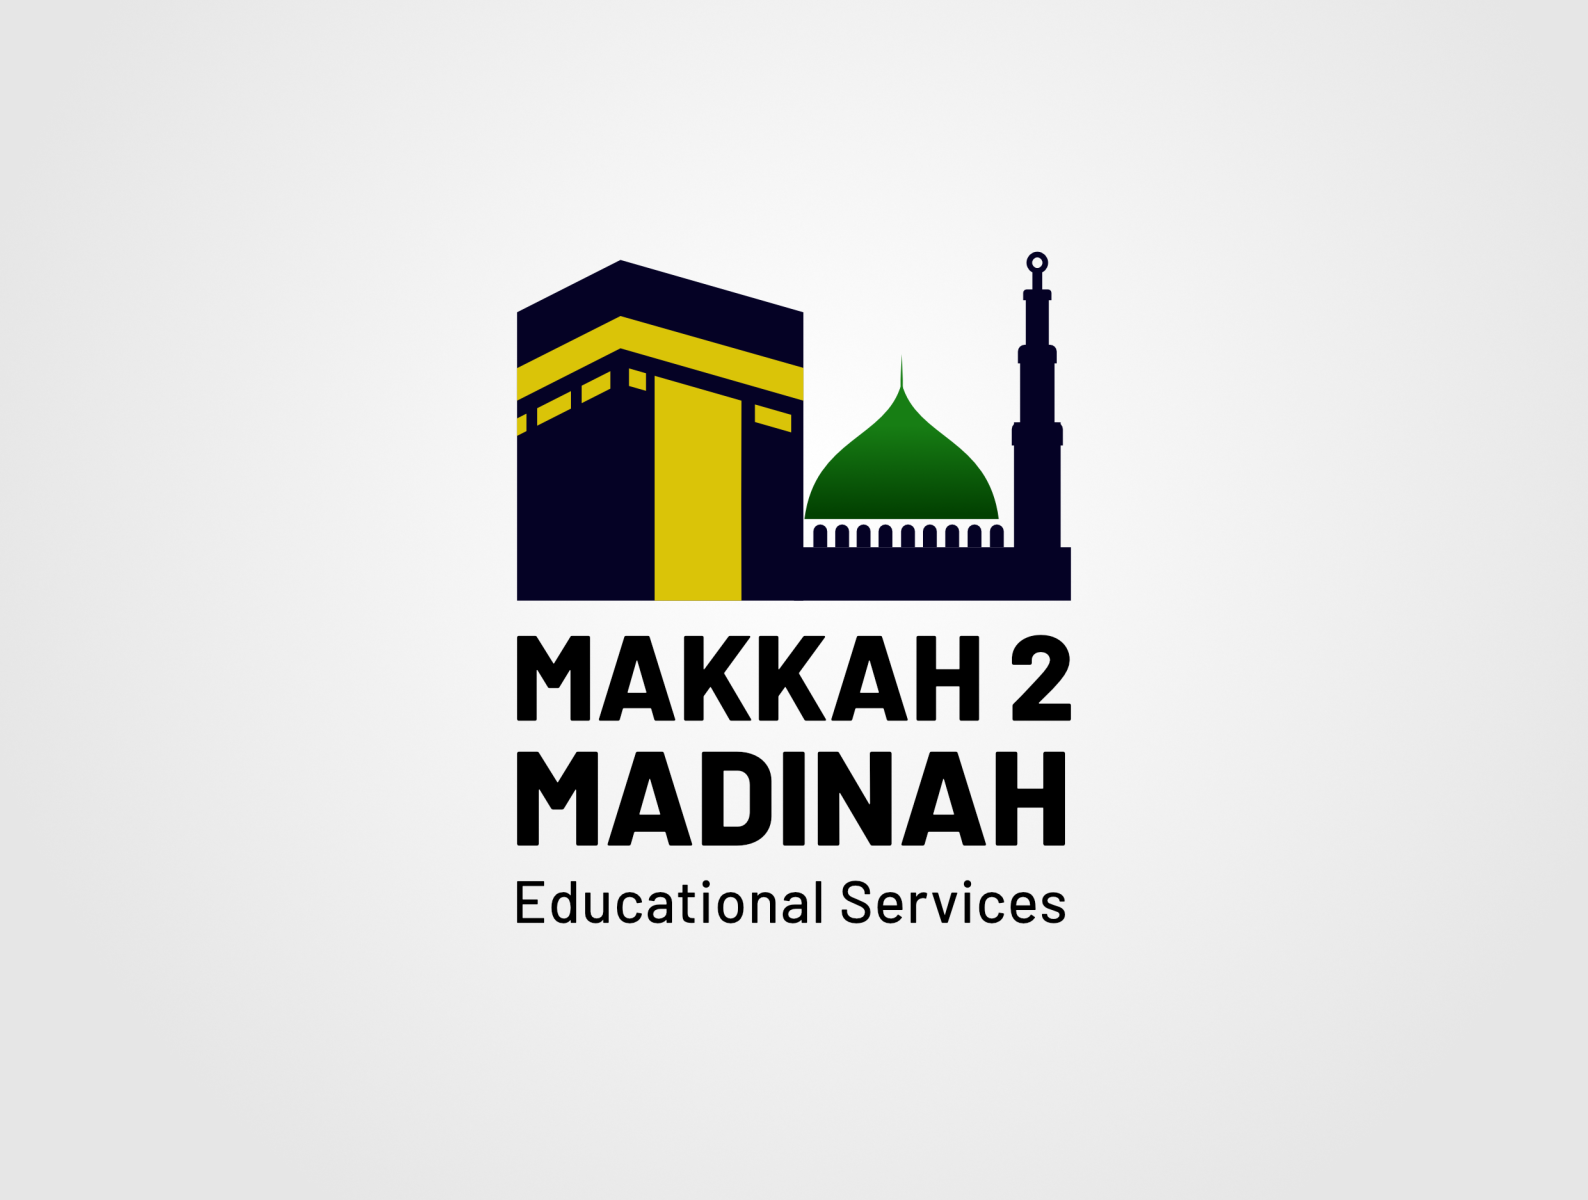 Madina Masjid & Islamic Centre - Wikipedia